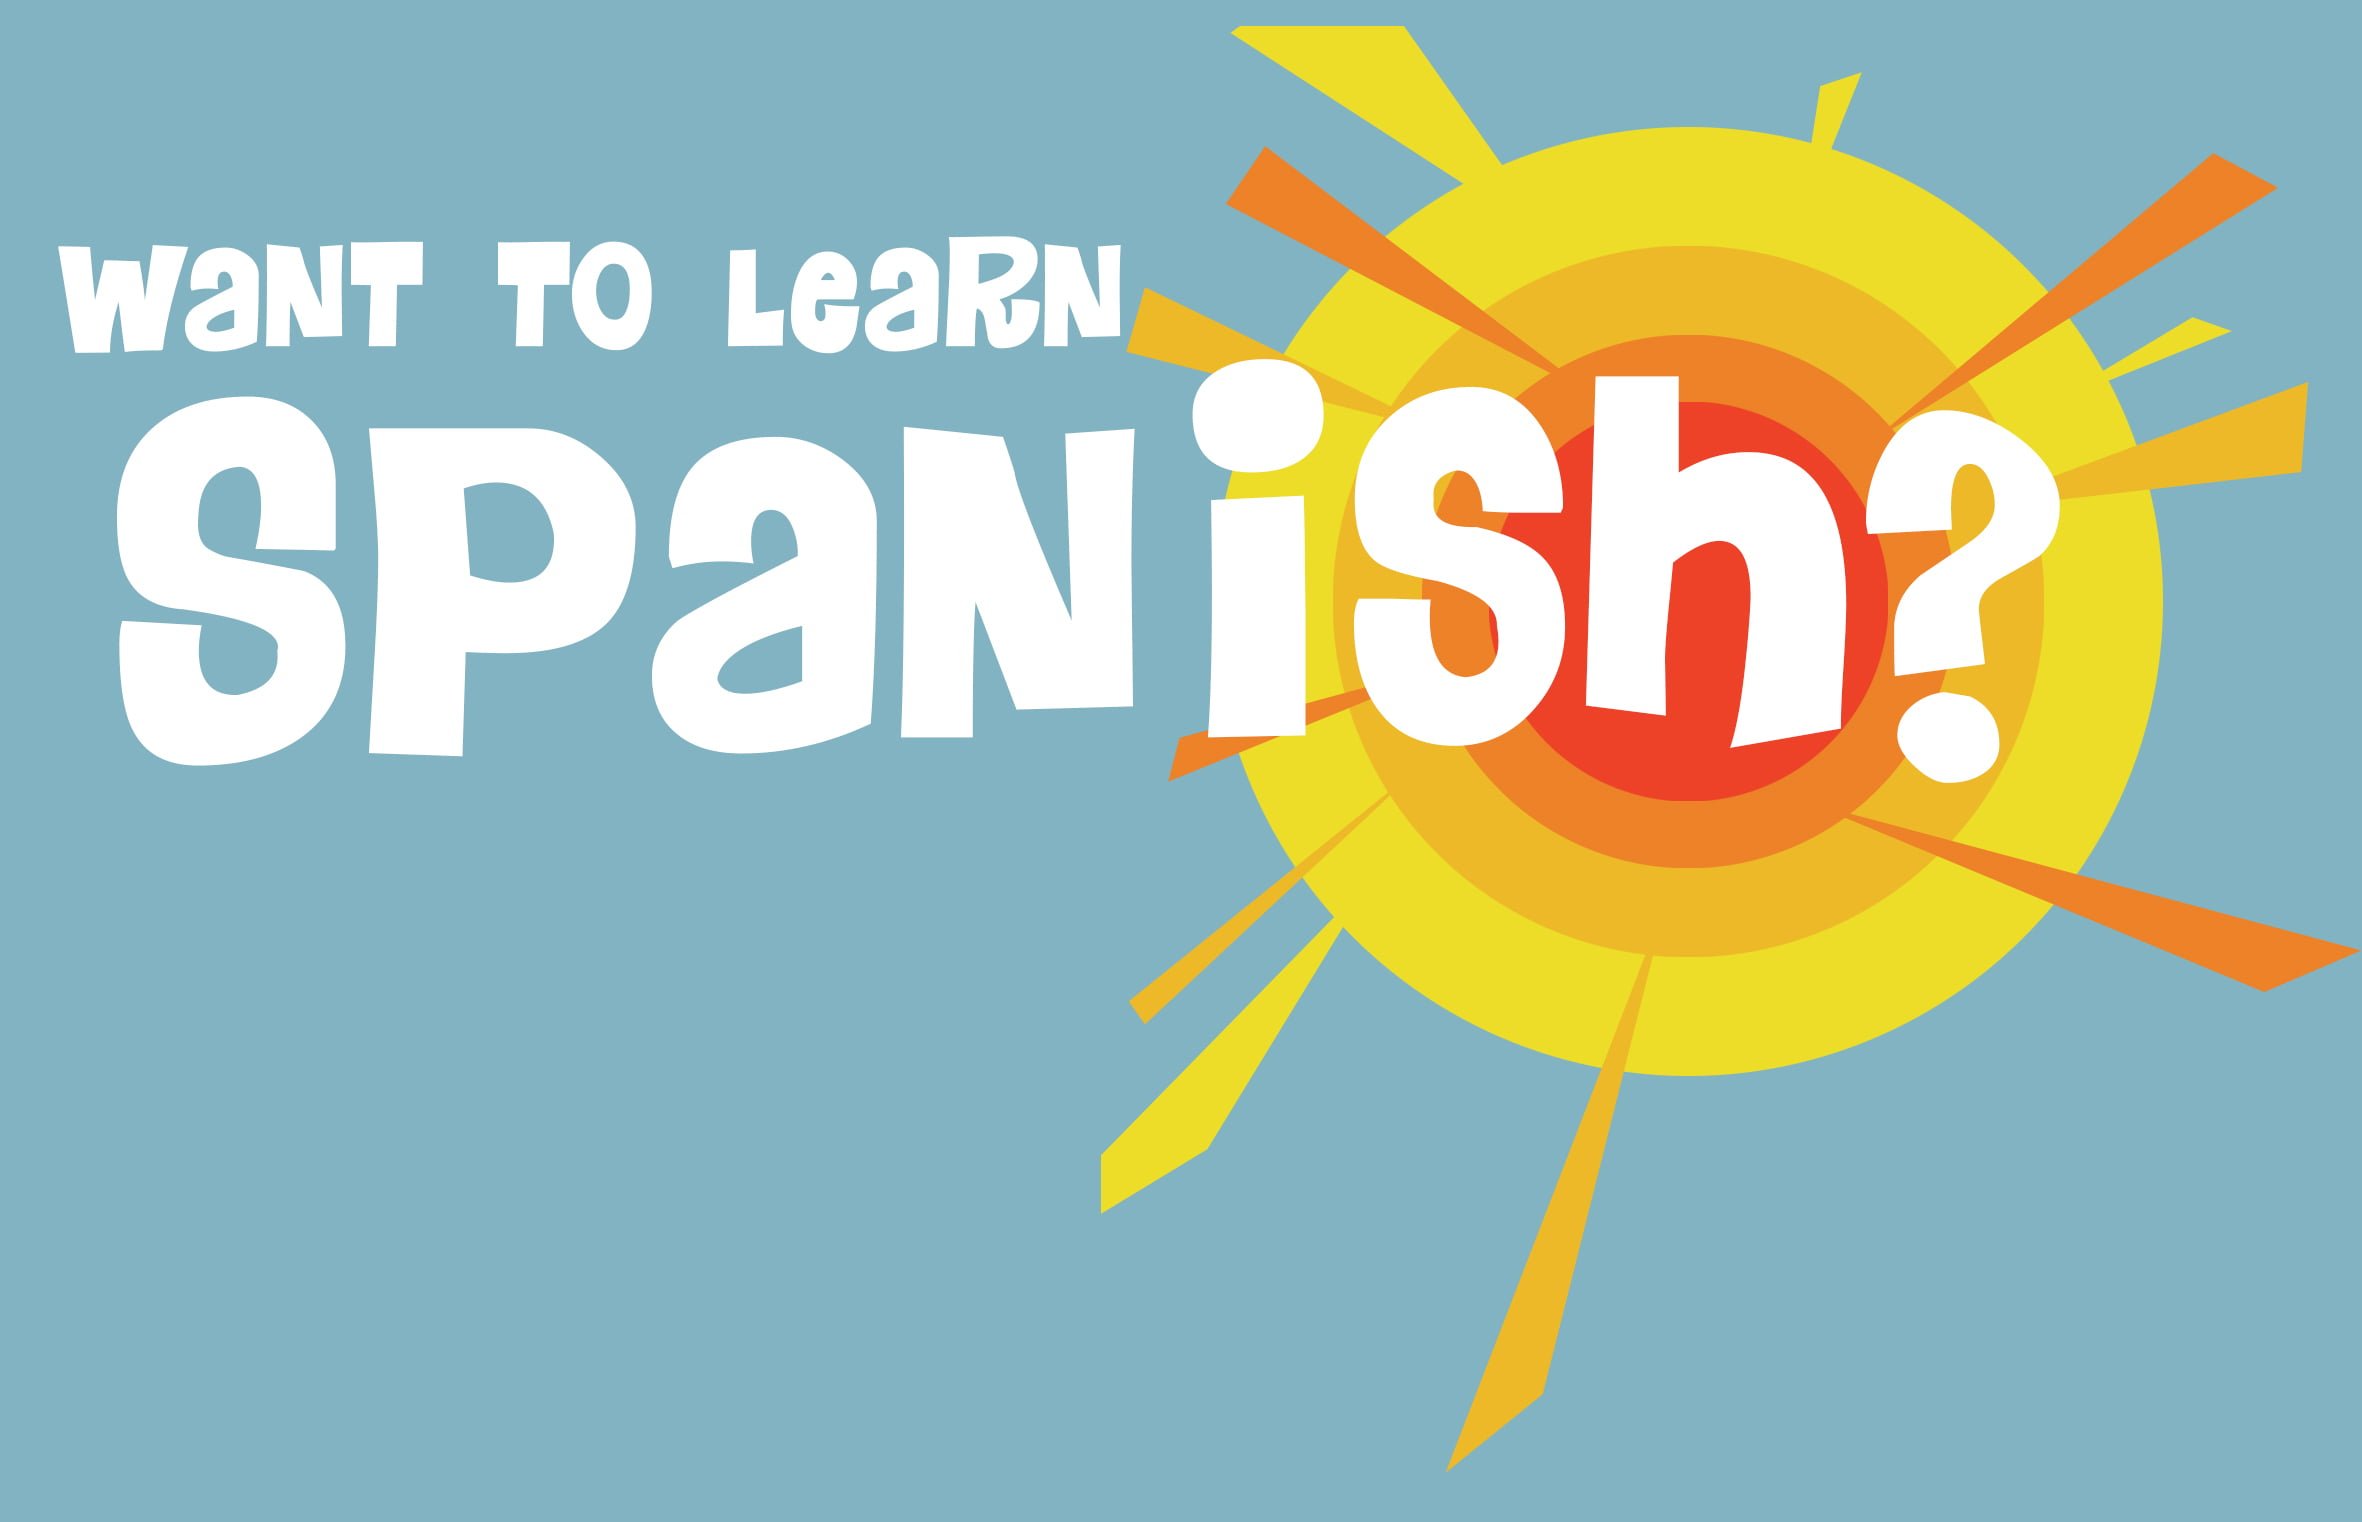 learn-spanish-in-30-days-senturinsingle